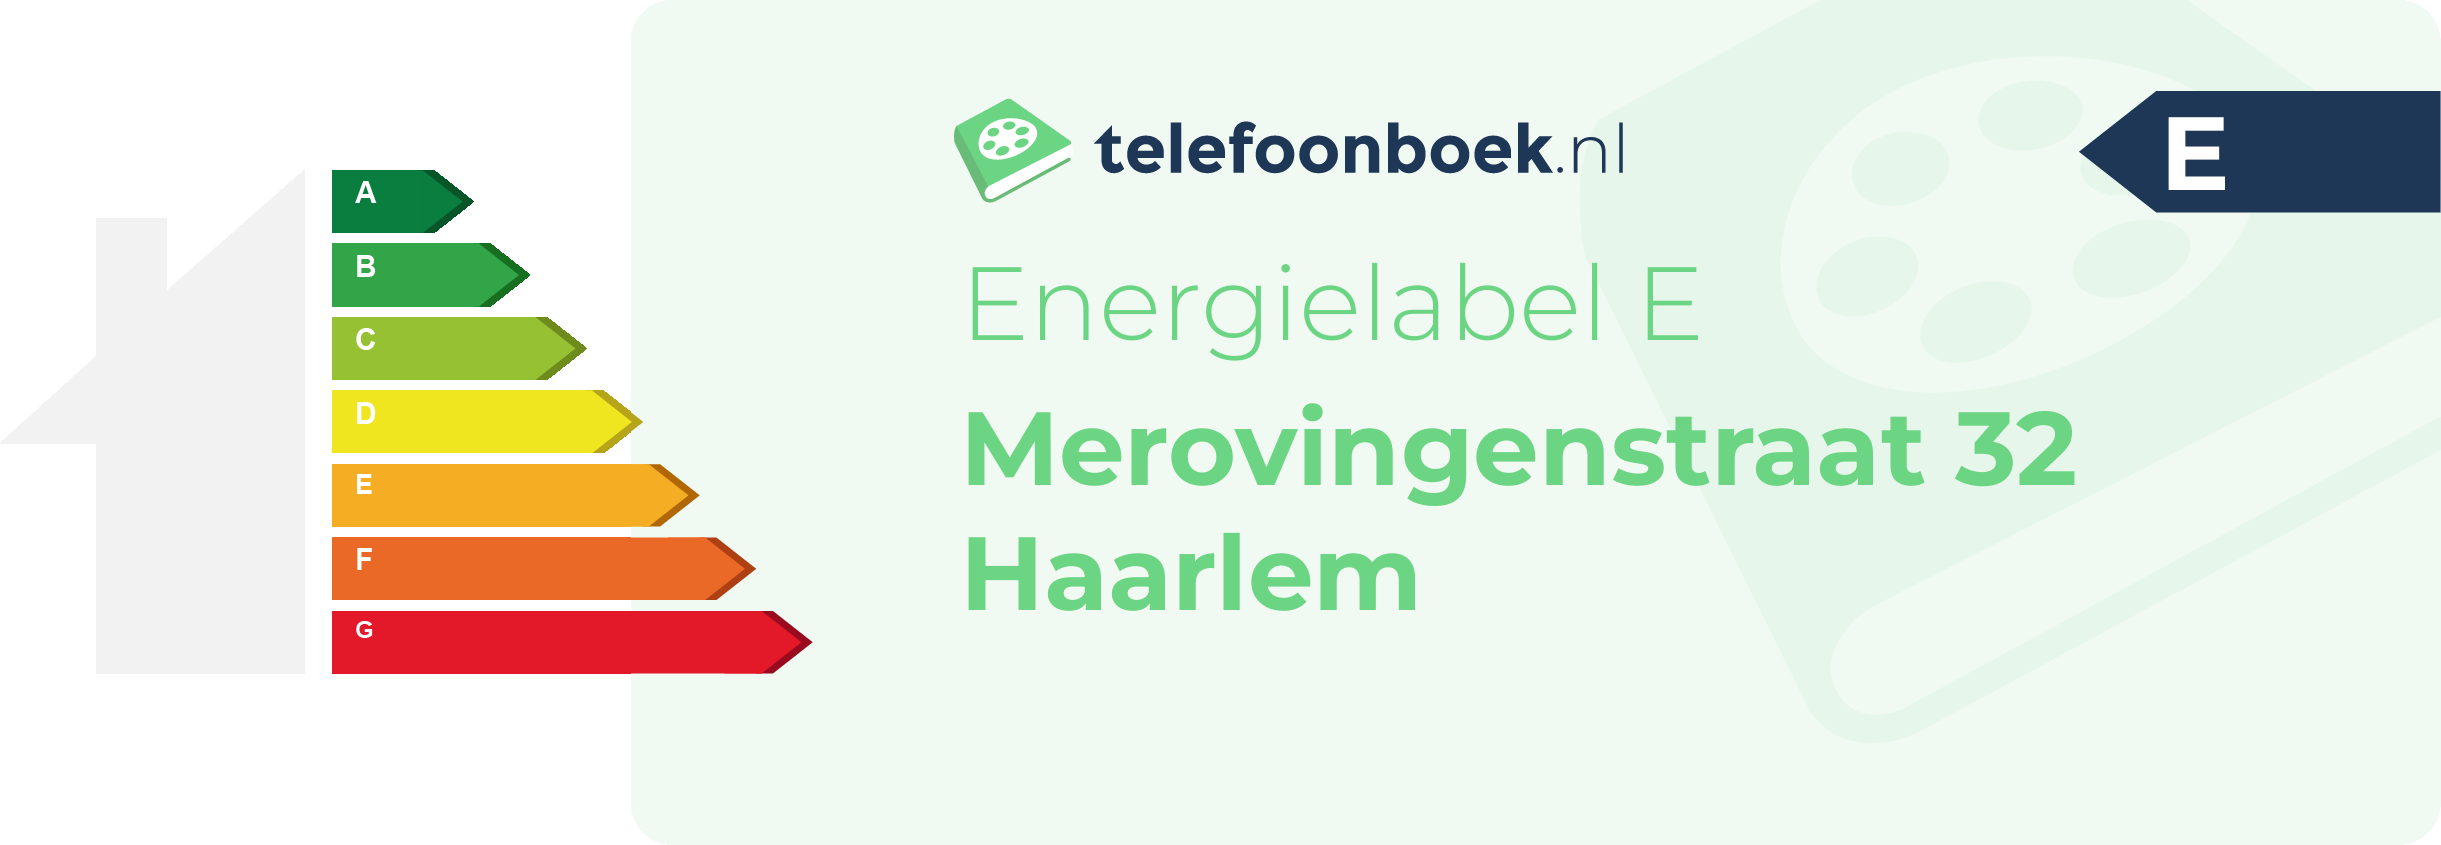 Energielabel Merovingenstraat 32 Haarlem